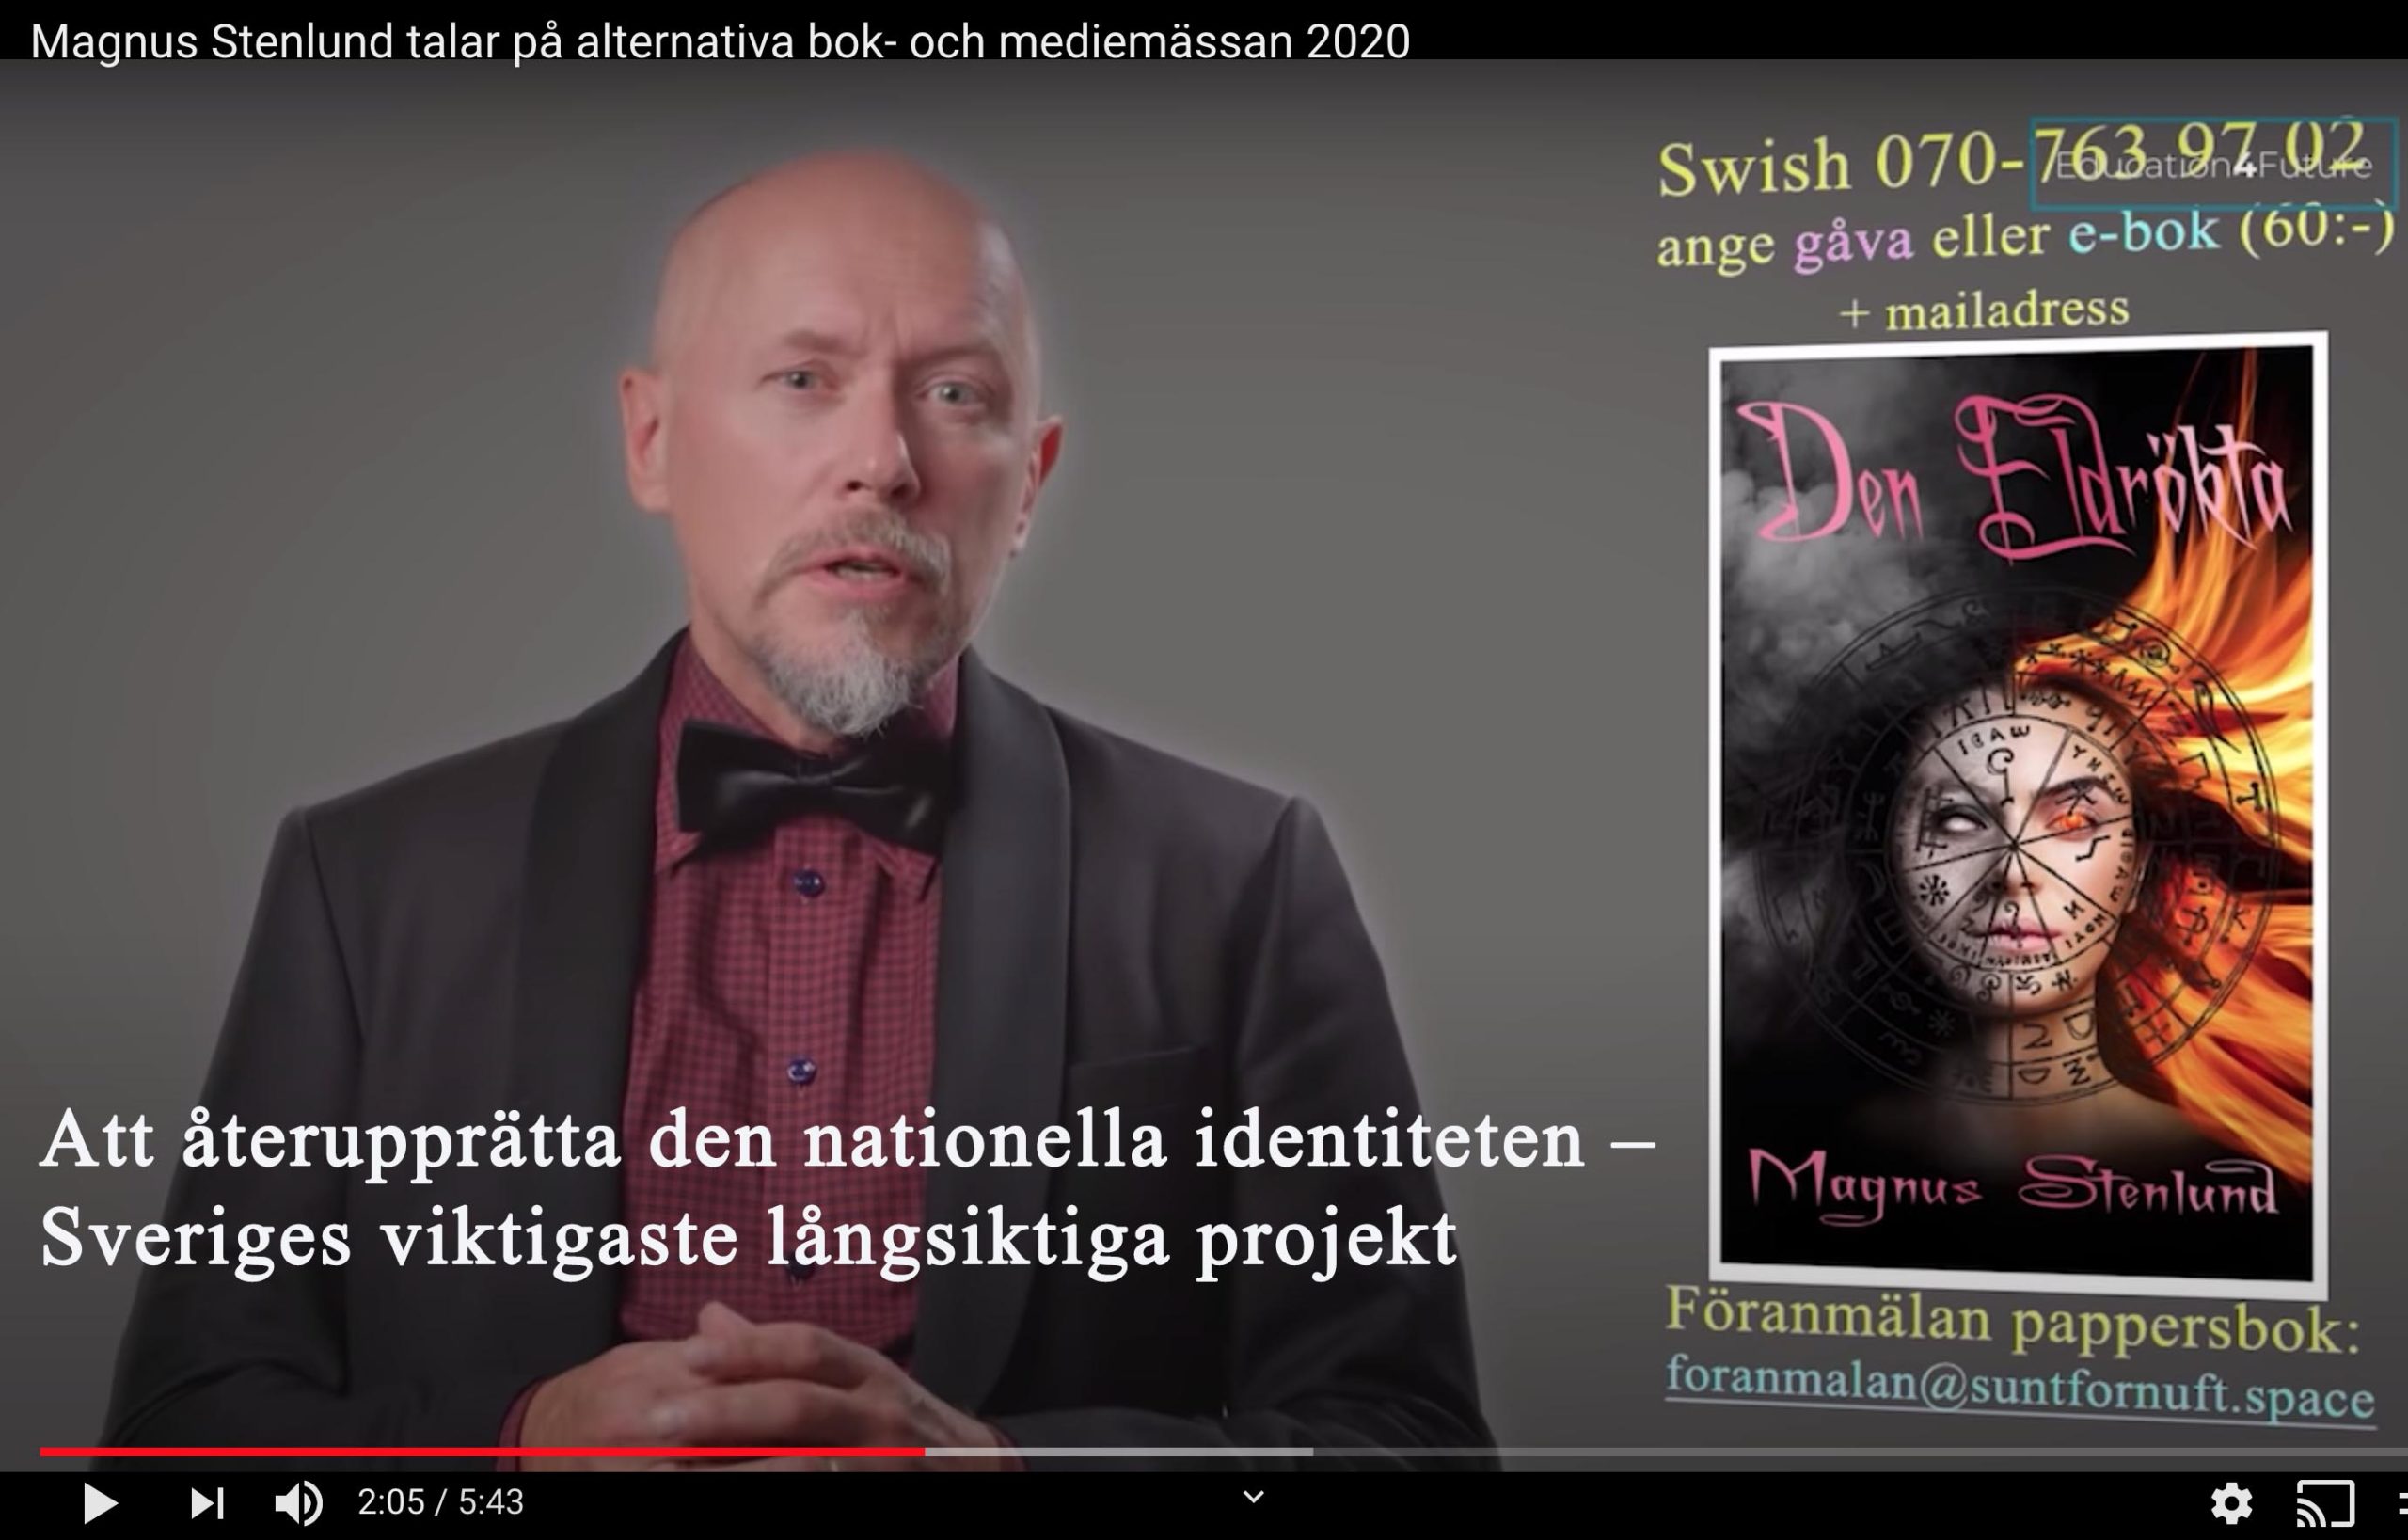 Att återupprätta vår nationella identitet – på sikt Sveriges viktigaste projekt.